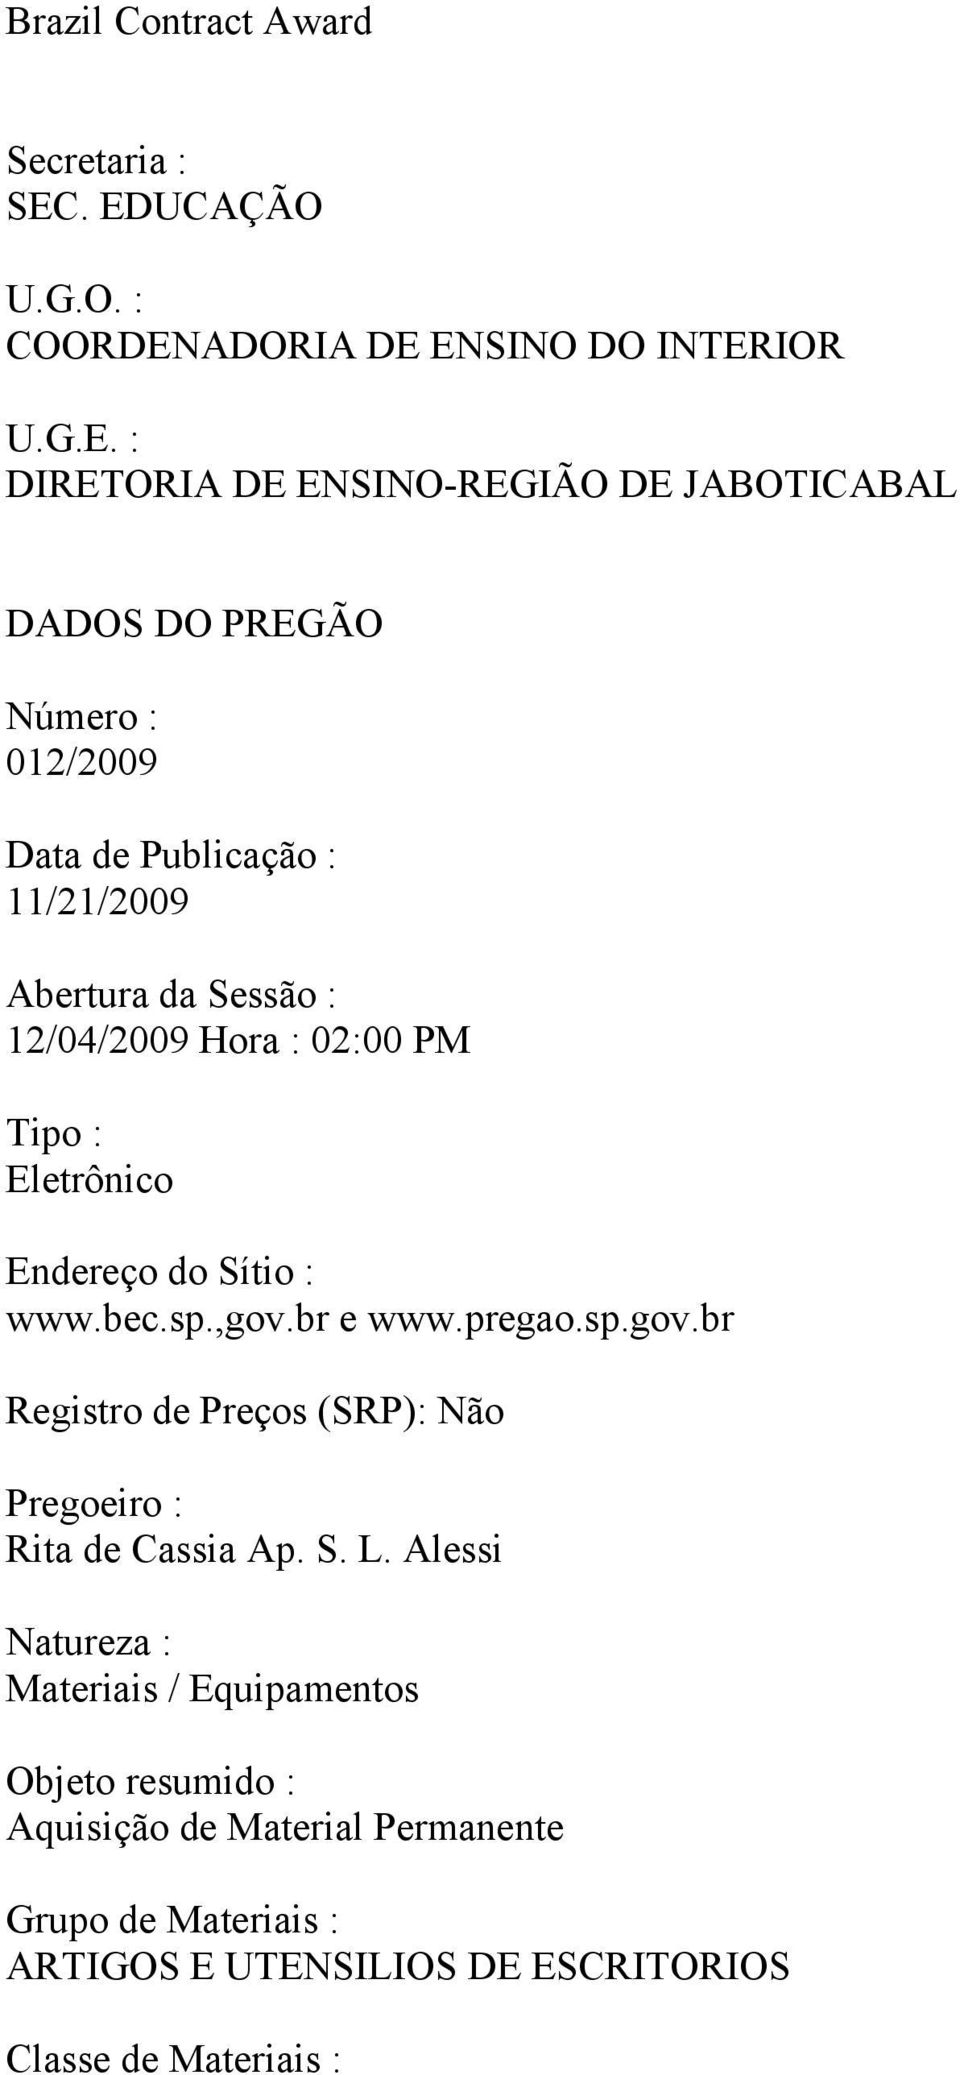 Data de Publicação : 11/21/2009 Abertura da Sessão : 12/04/2009 Hora : 02:00 PM Tipo : Eletrônico Endereço do Sítio : www.bec.sp.,gov.br e www.